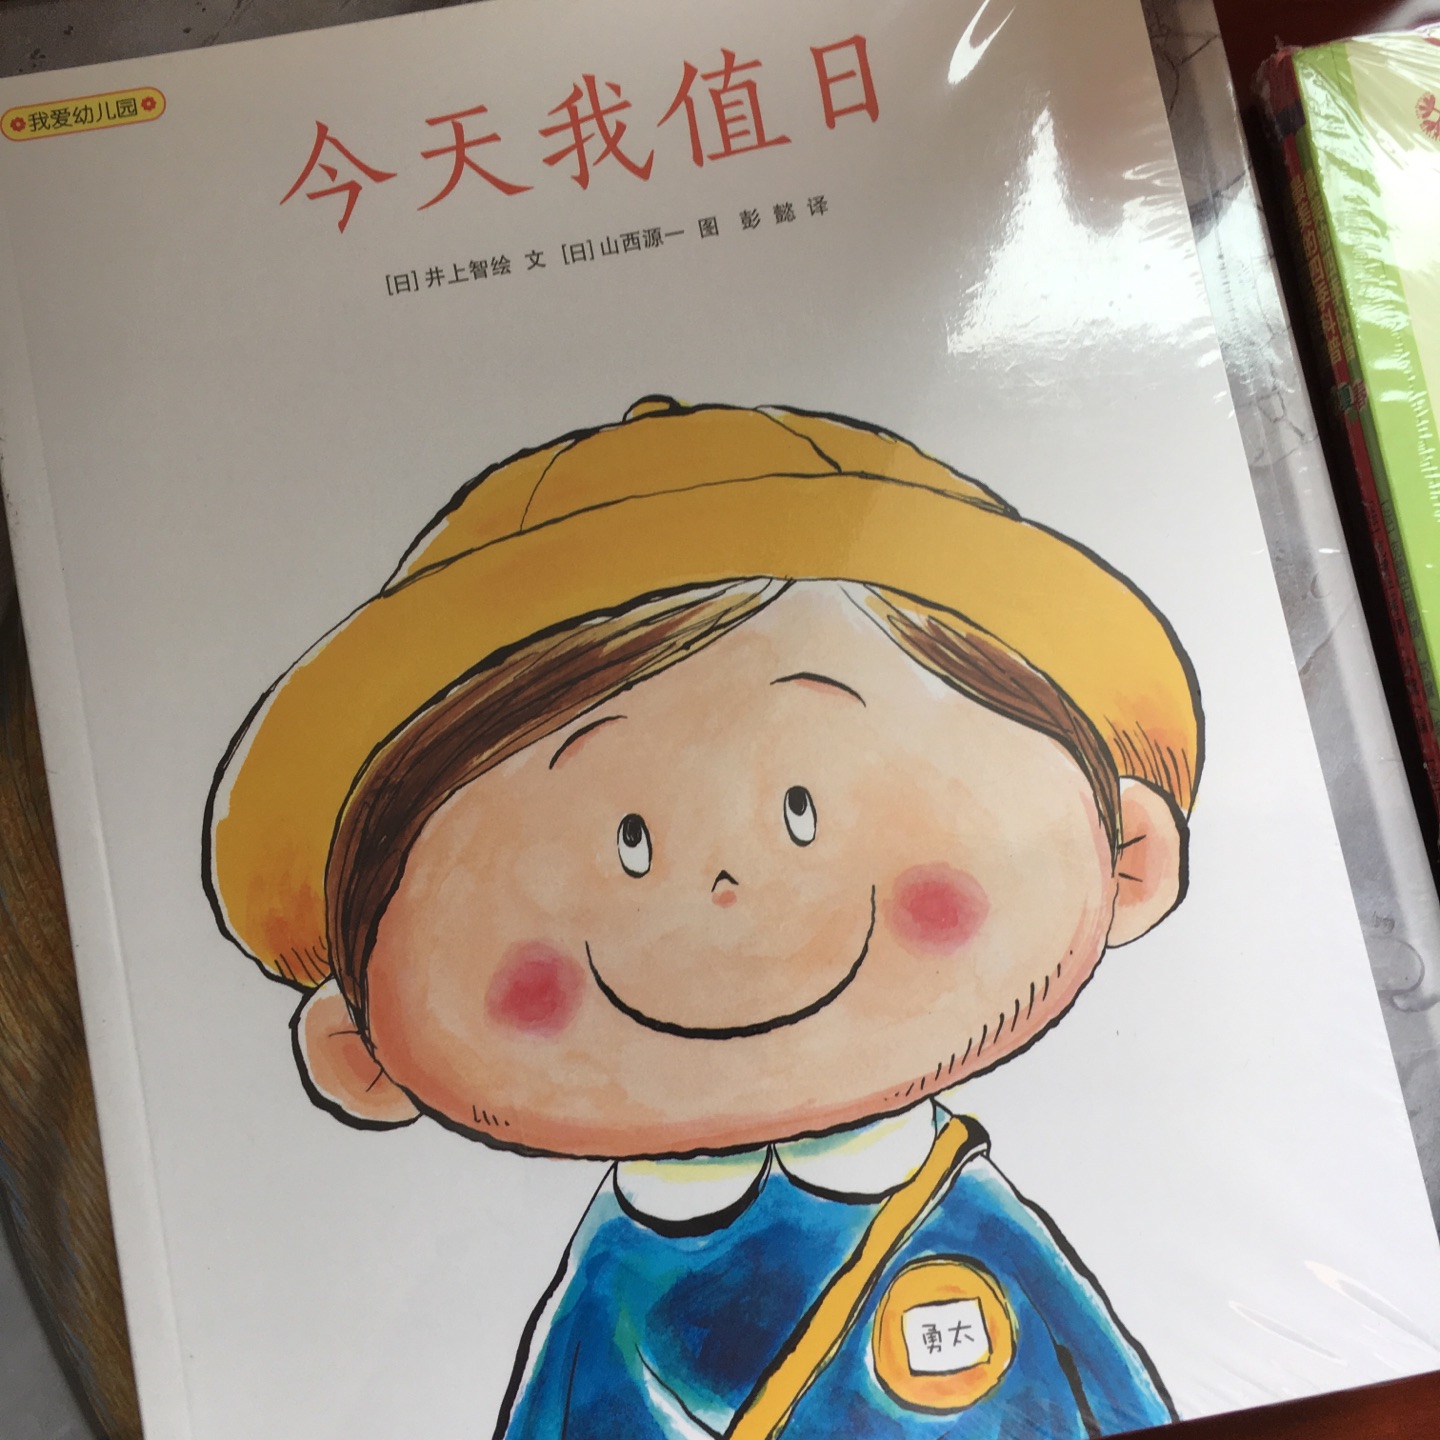 日本人画的儿童绘本还是挺值得看的。